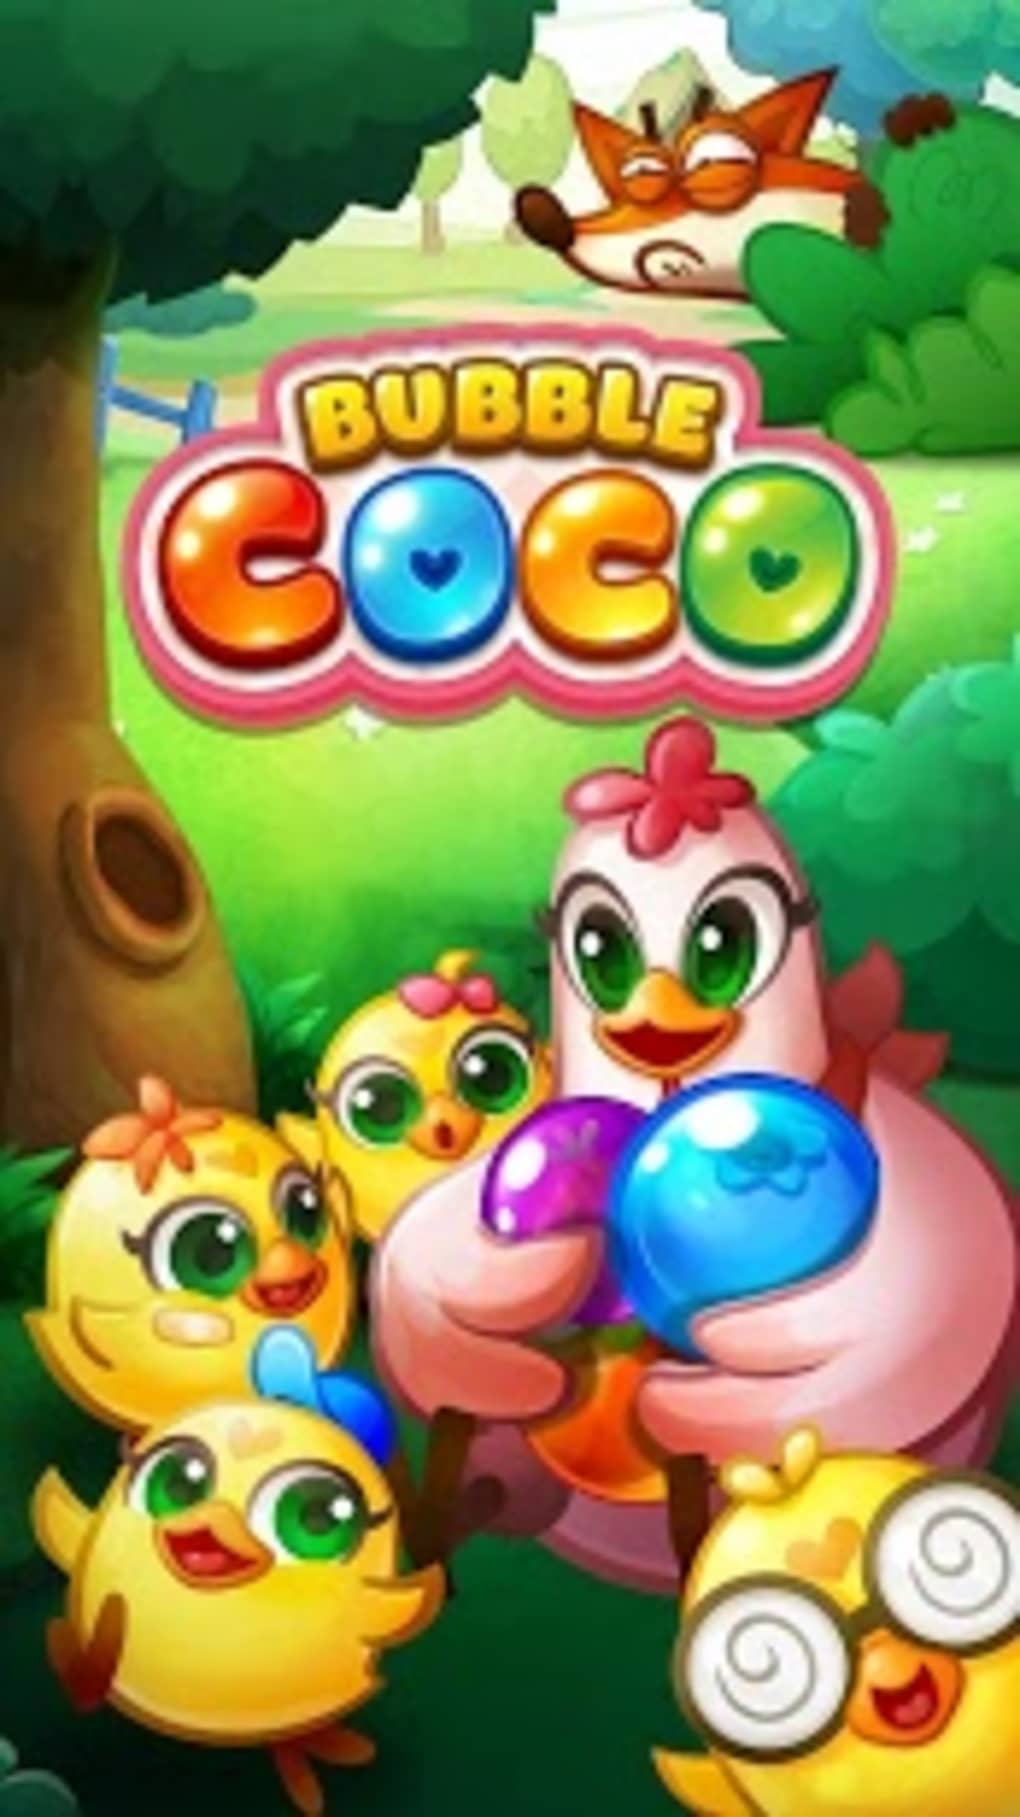 Bubble CoCo